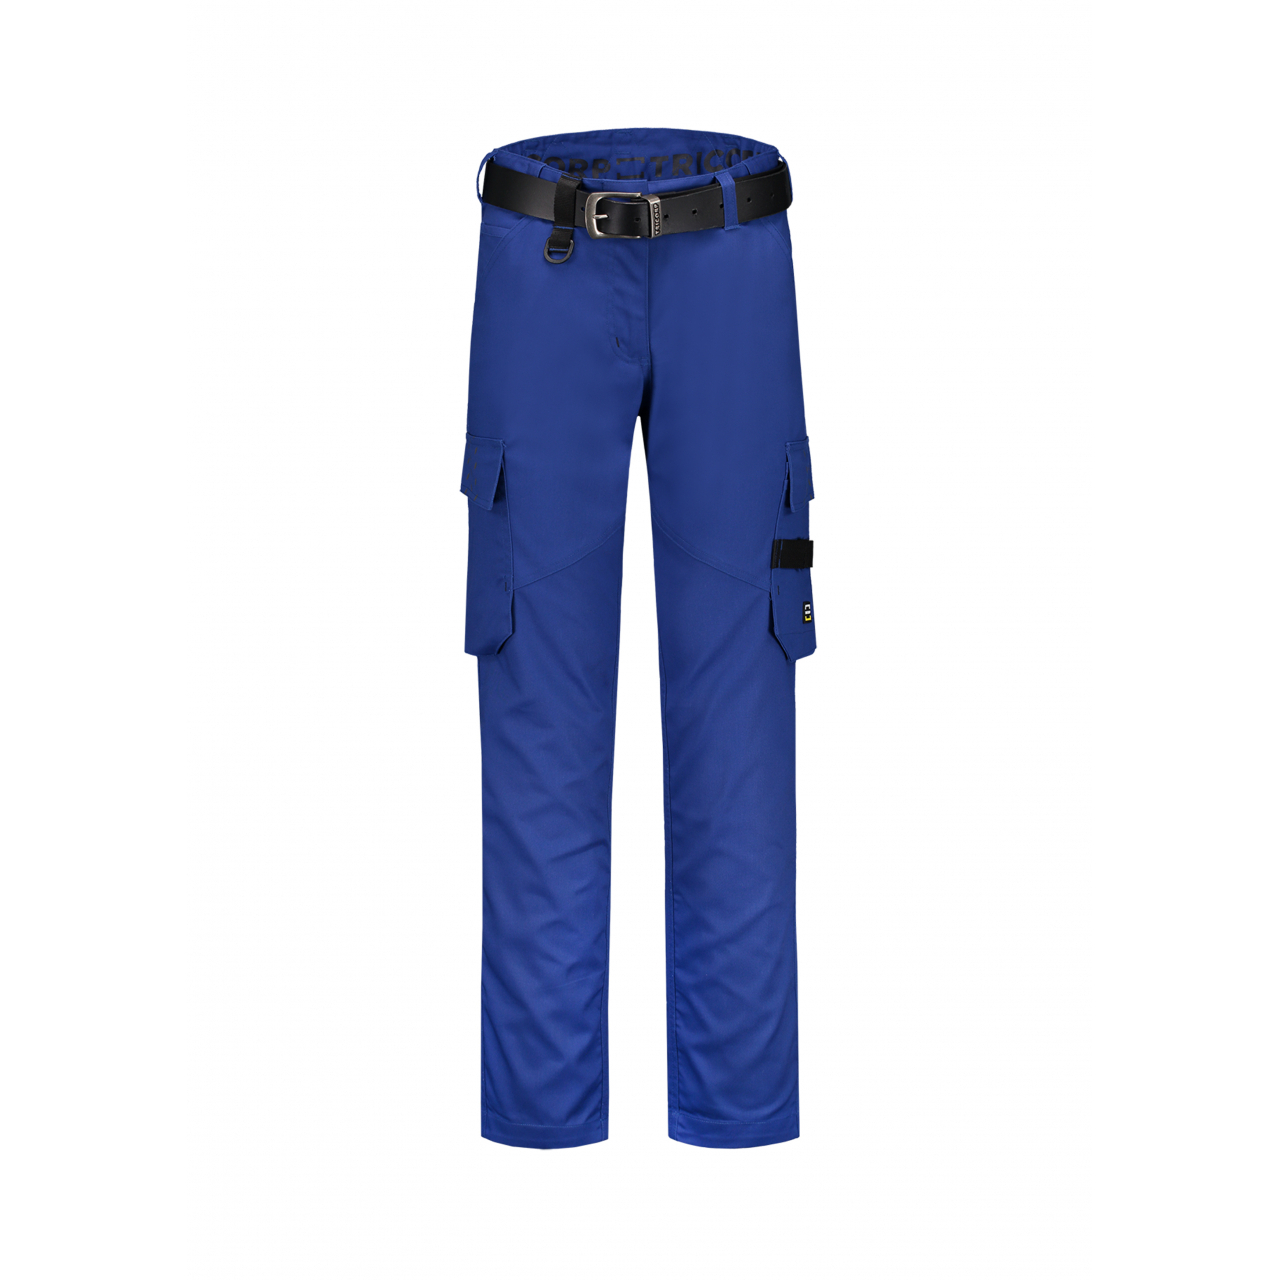 Pracovní kalhoty dámské Tricorp Work Pants Twill Woman - modré, 40